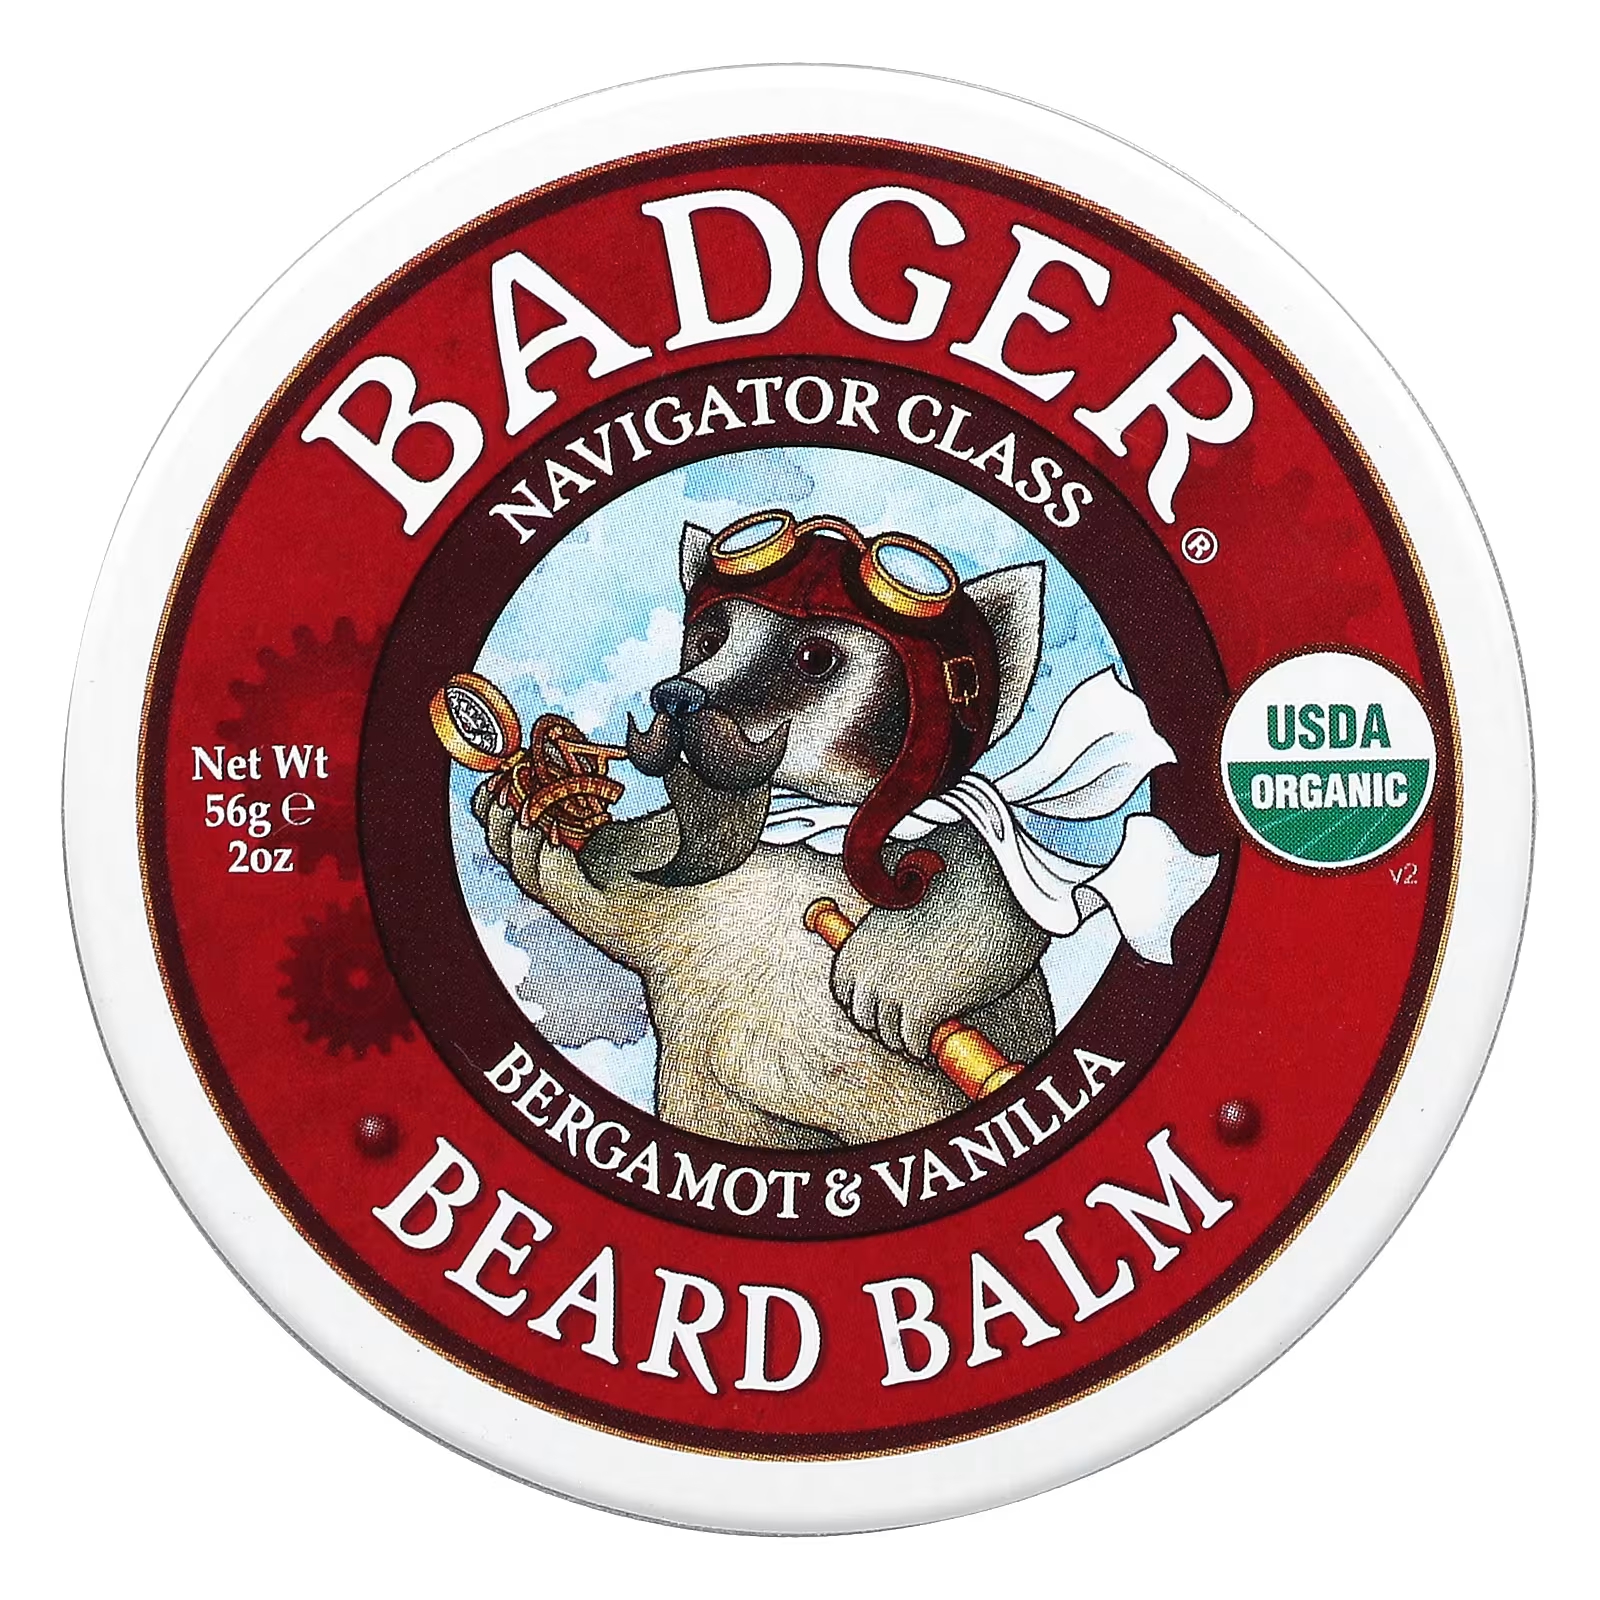 Бальзам для бороды Badger Company, 56 г badger company badger бальзам для рабочих рук 75 унции 21 г